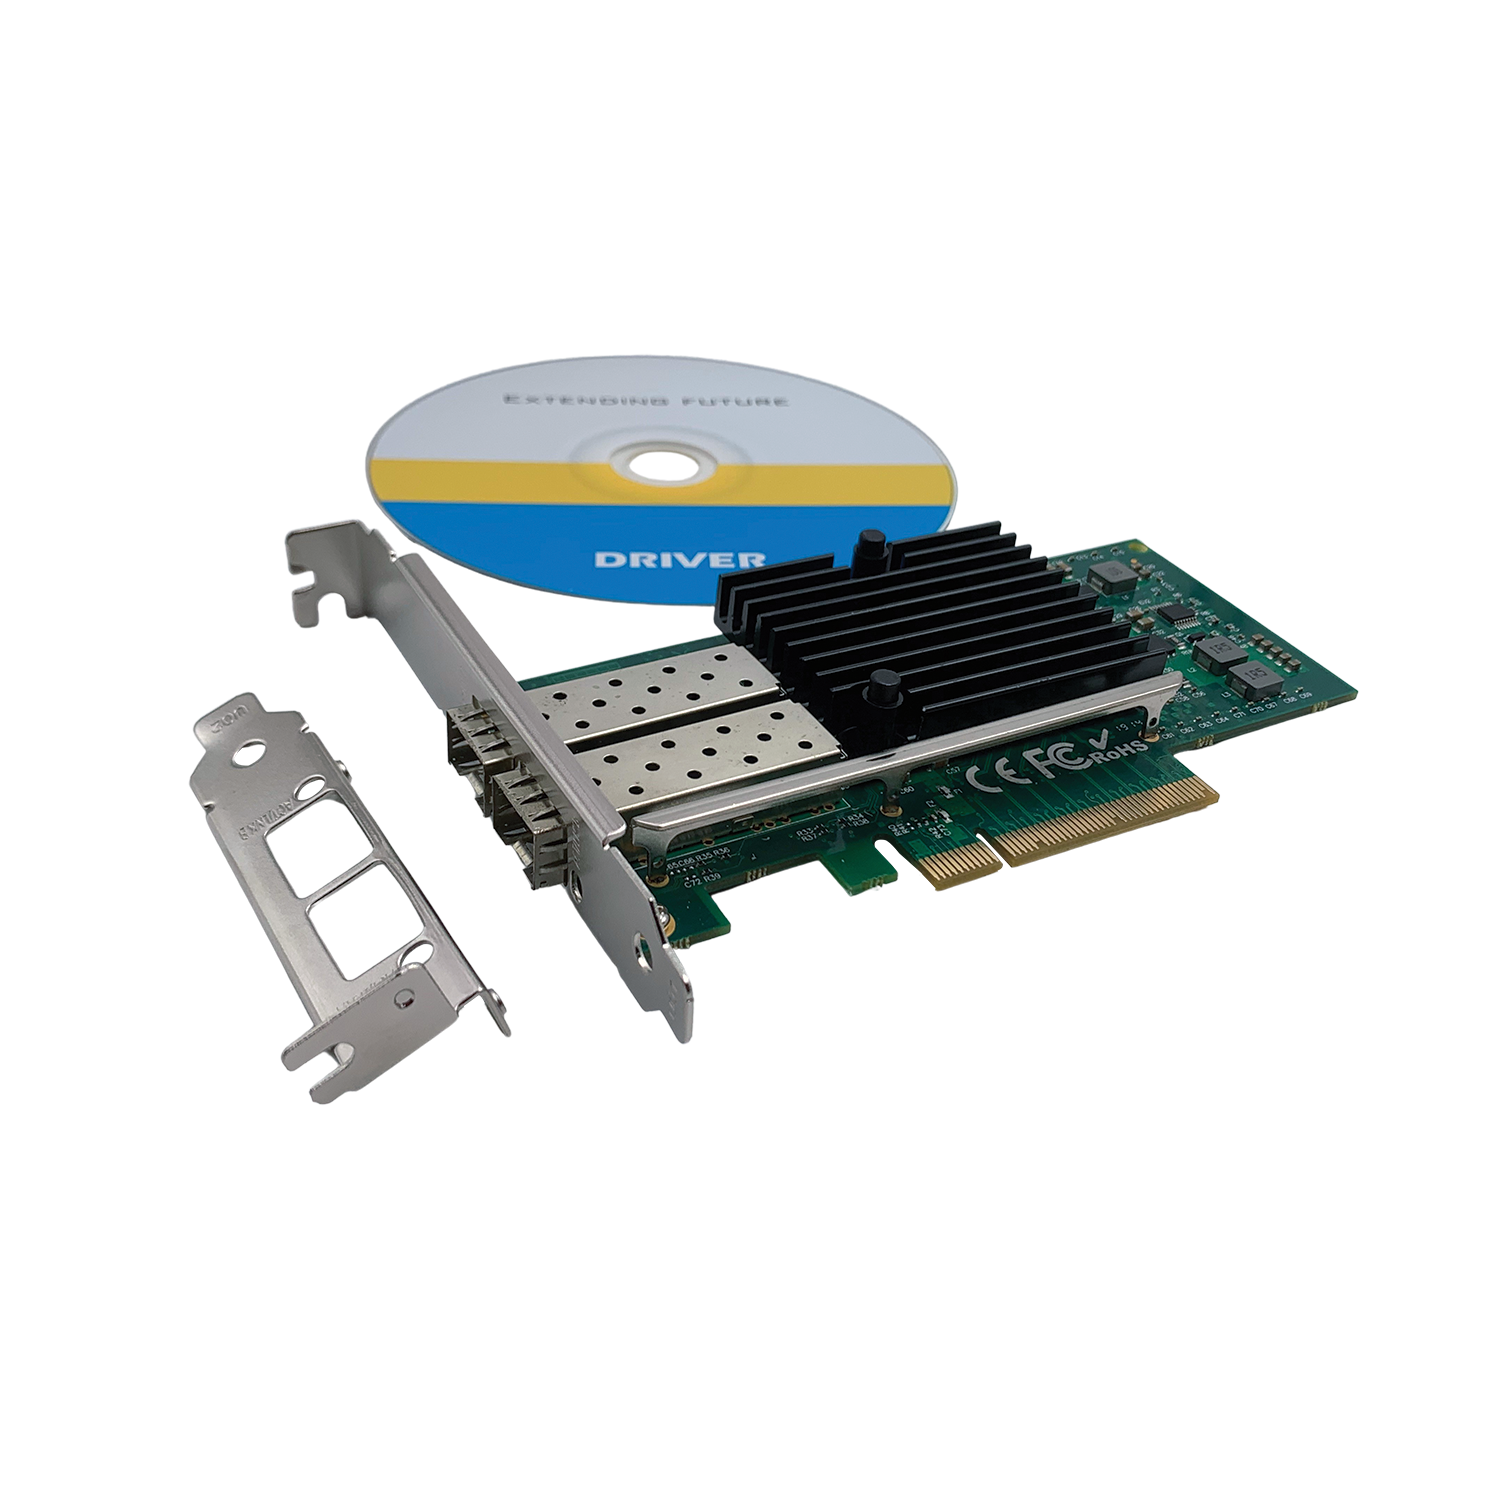 PCIe x8 10GbE LAN 2SFP (Intel X520-DA2/SR2 Chipset)